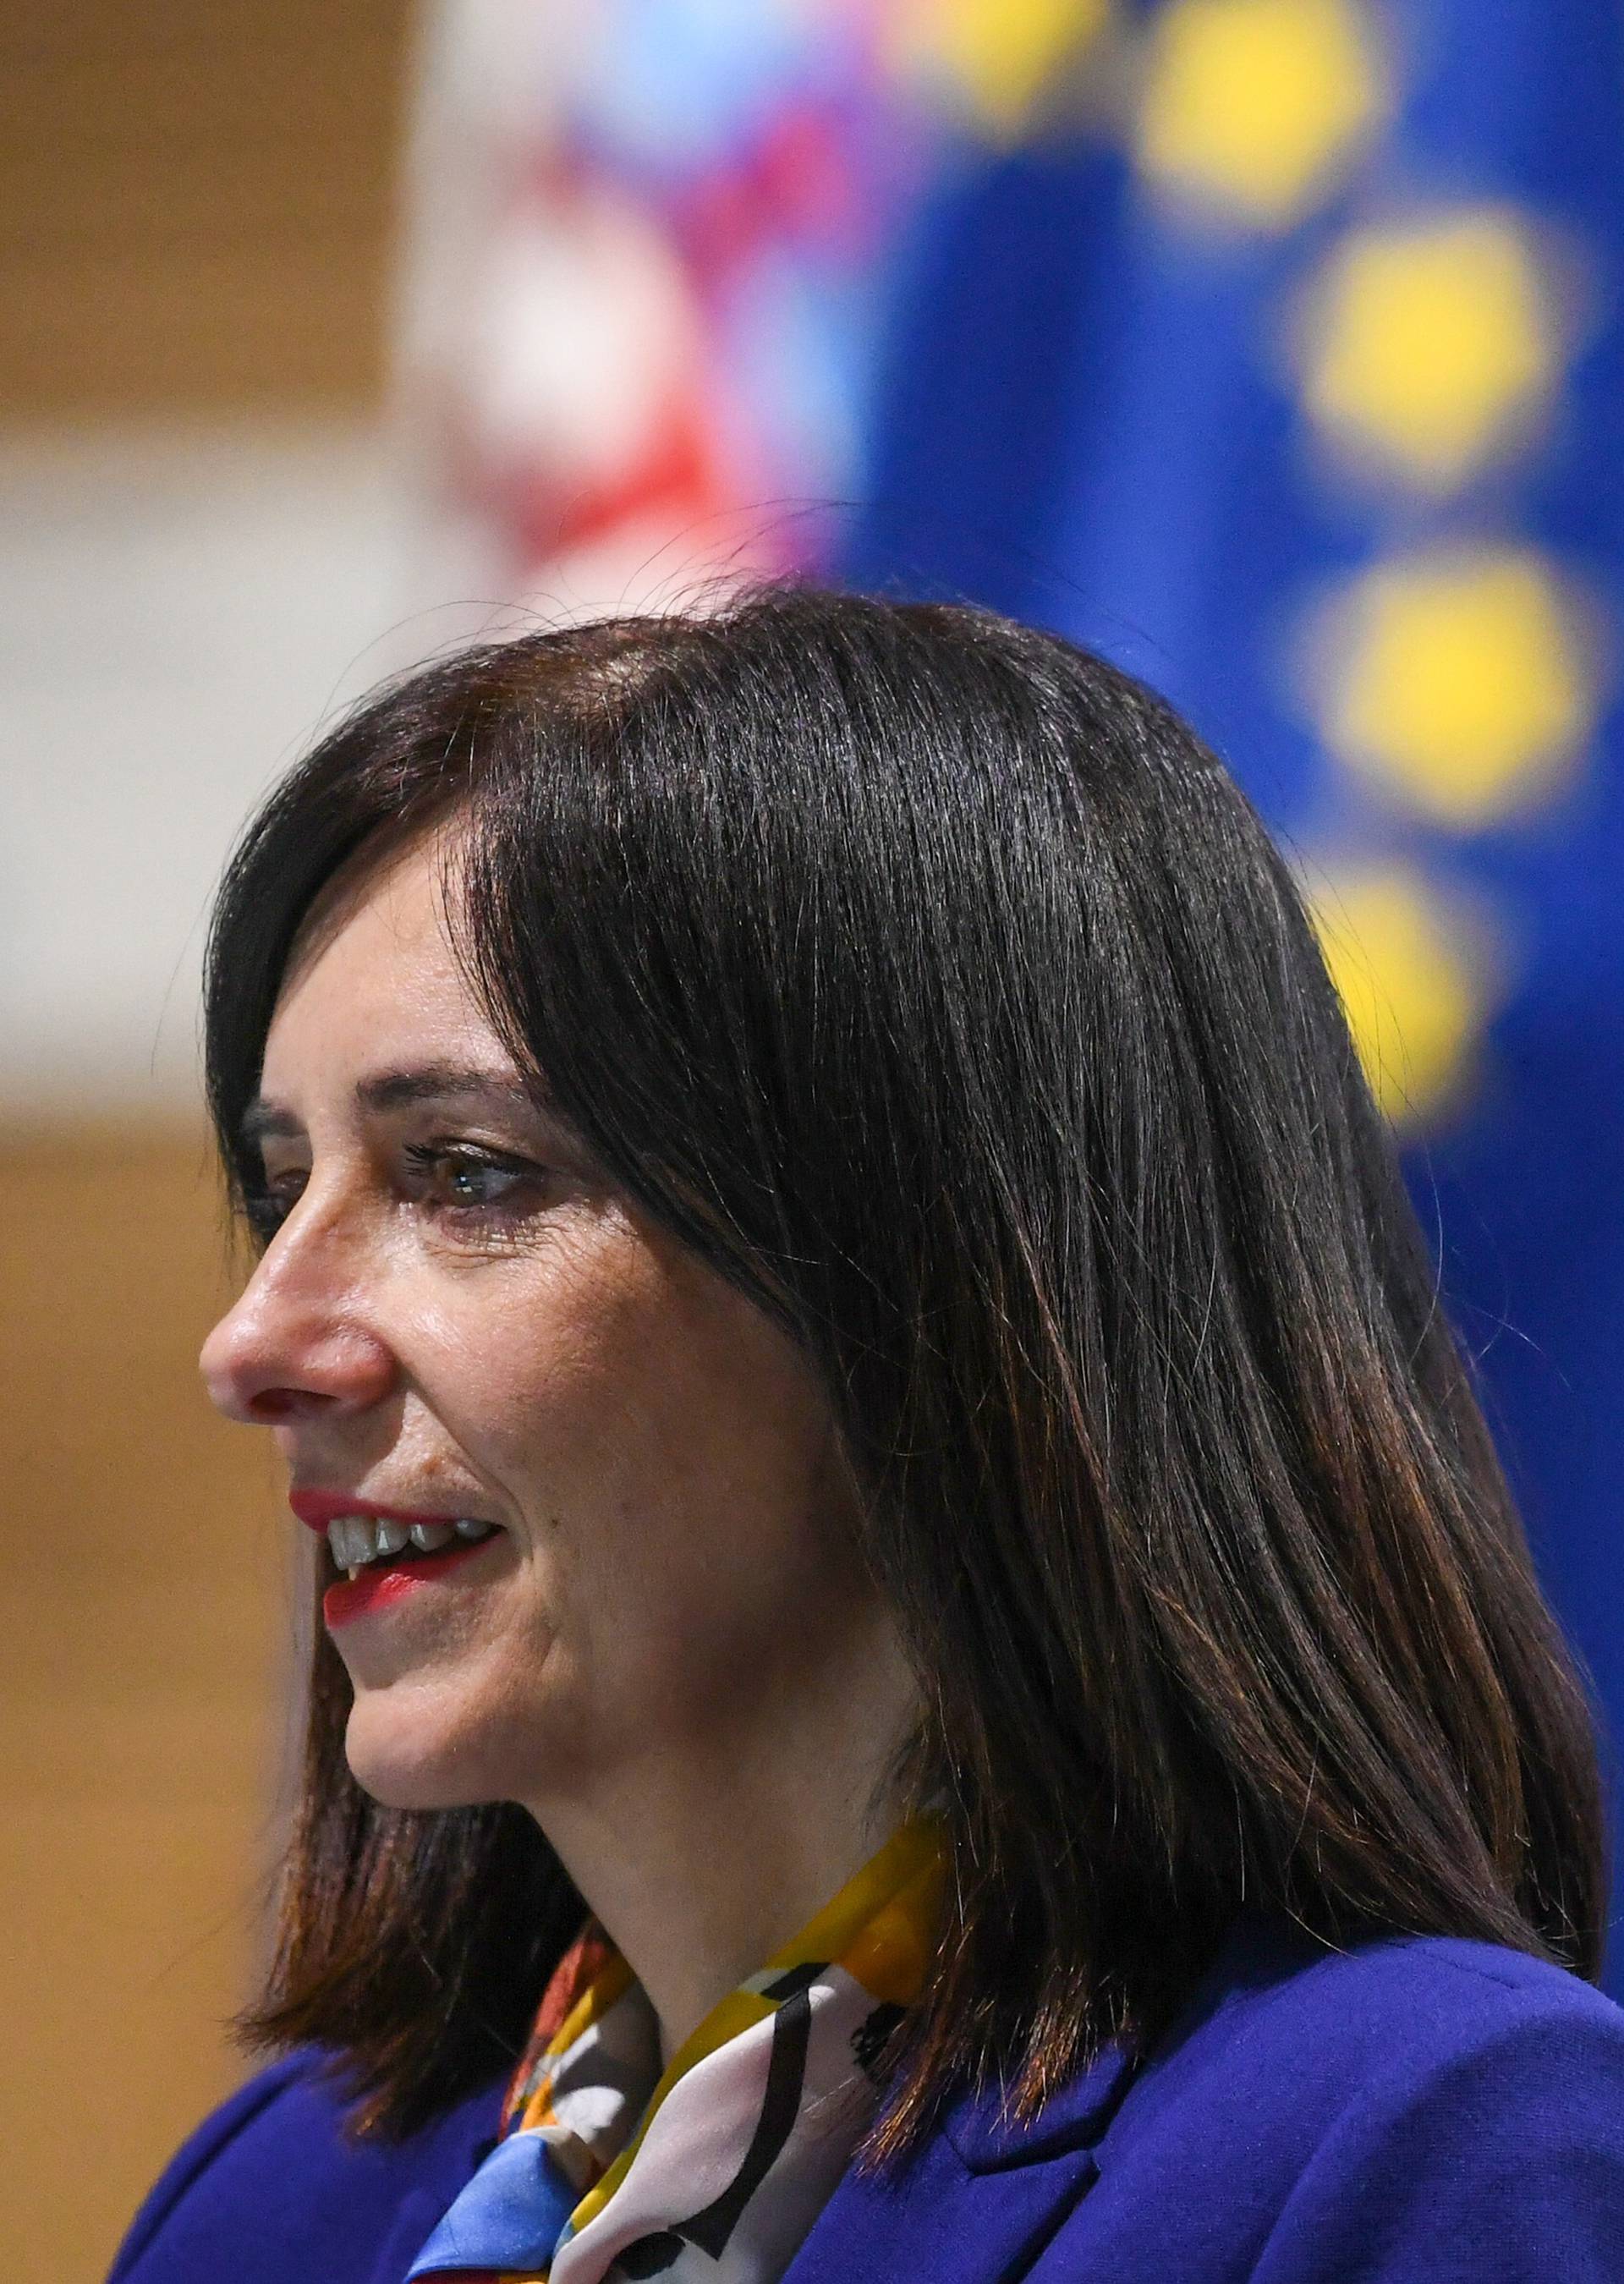 Zagreb: Ministrica Blaženka Divjak na videokonferenciji s ministrima EU